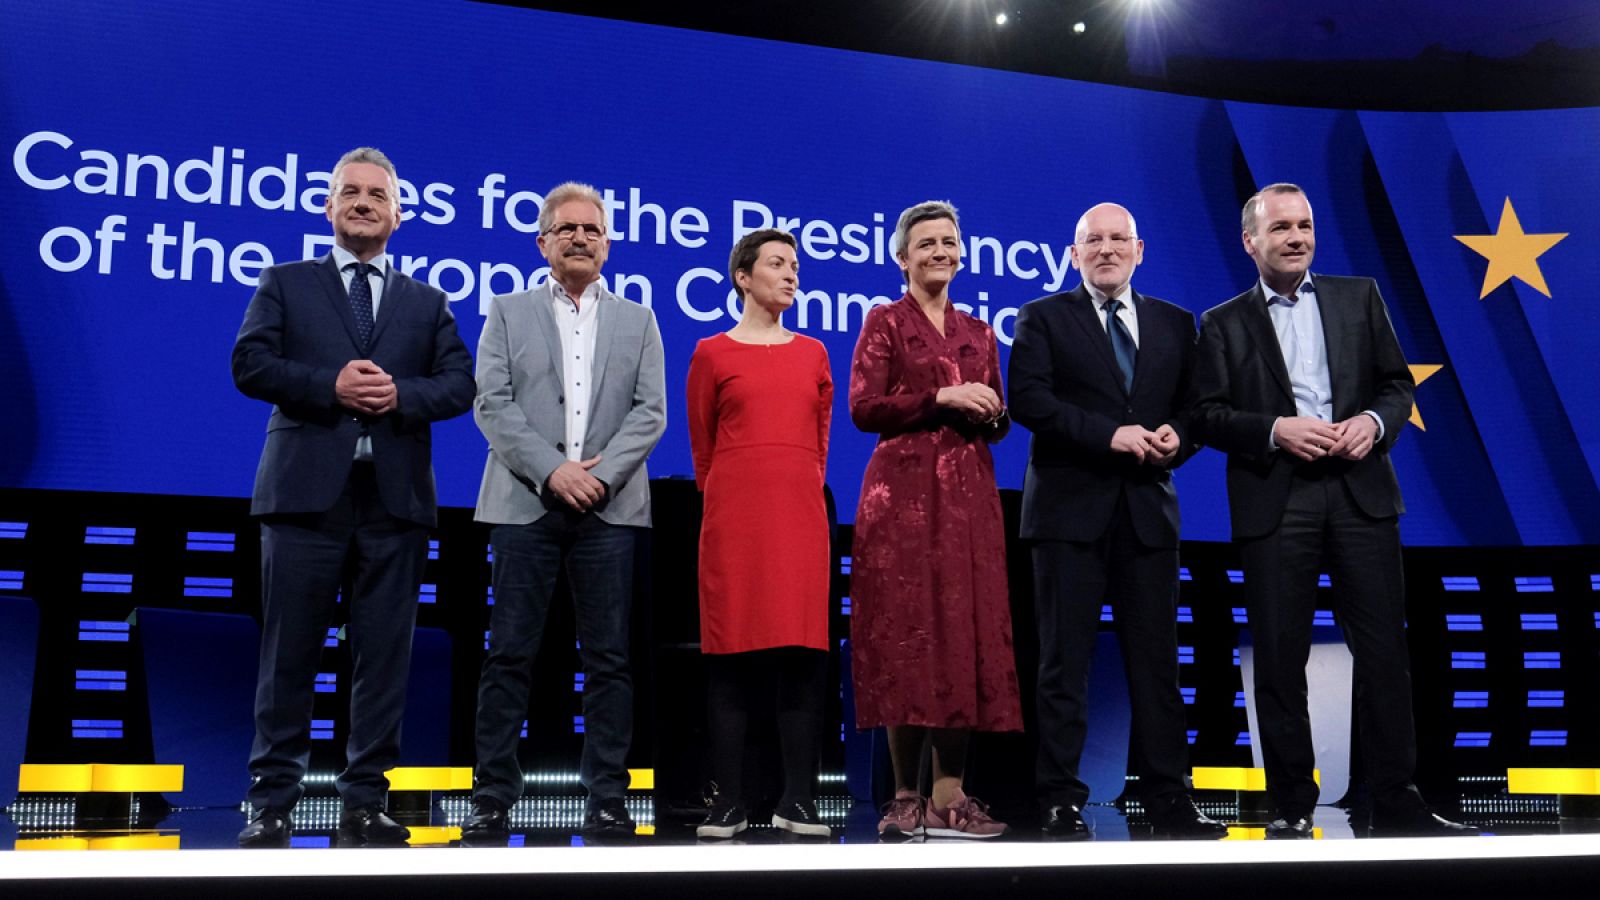 Los candidatos a las elecciones europeas presentan sus propuestas en 30 segundos